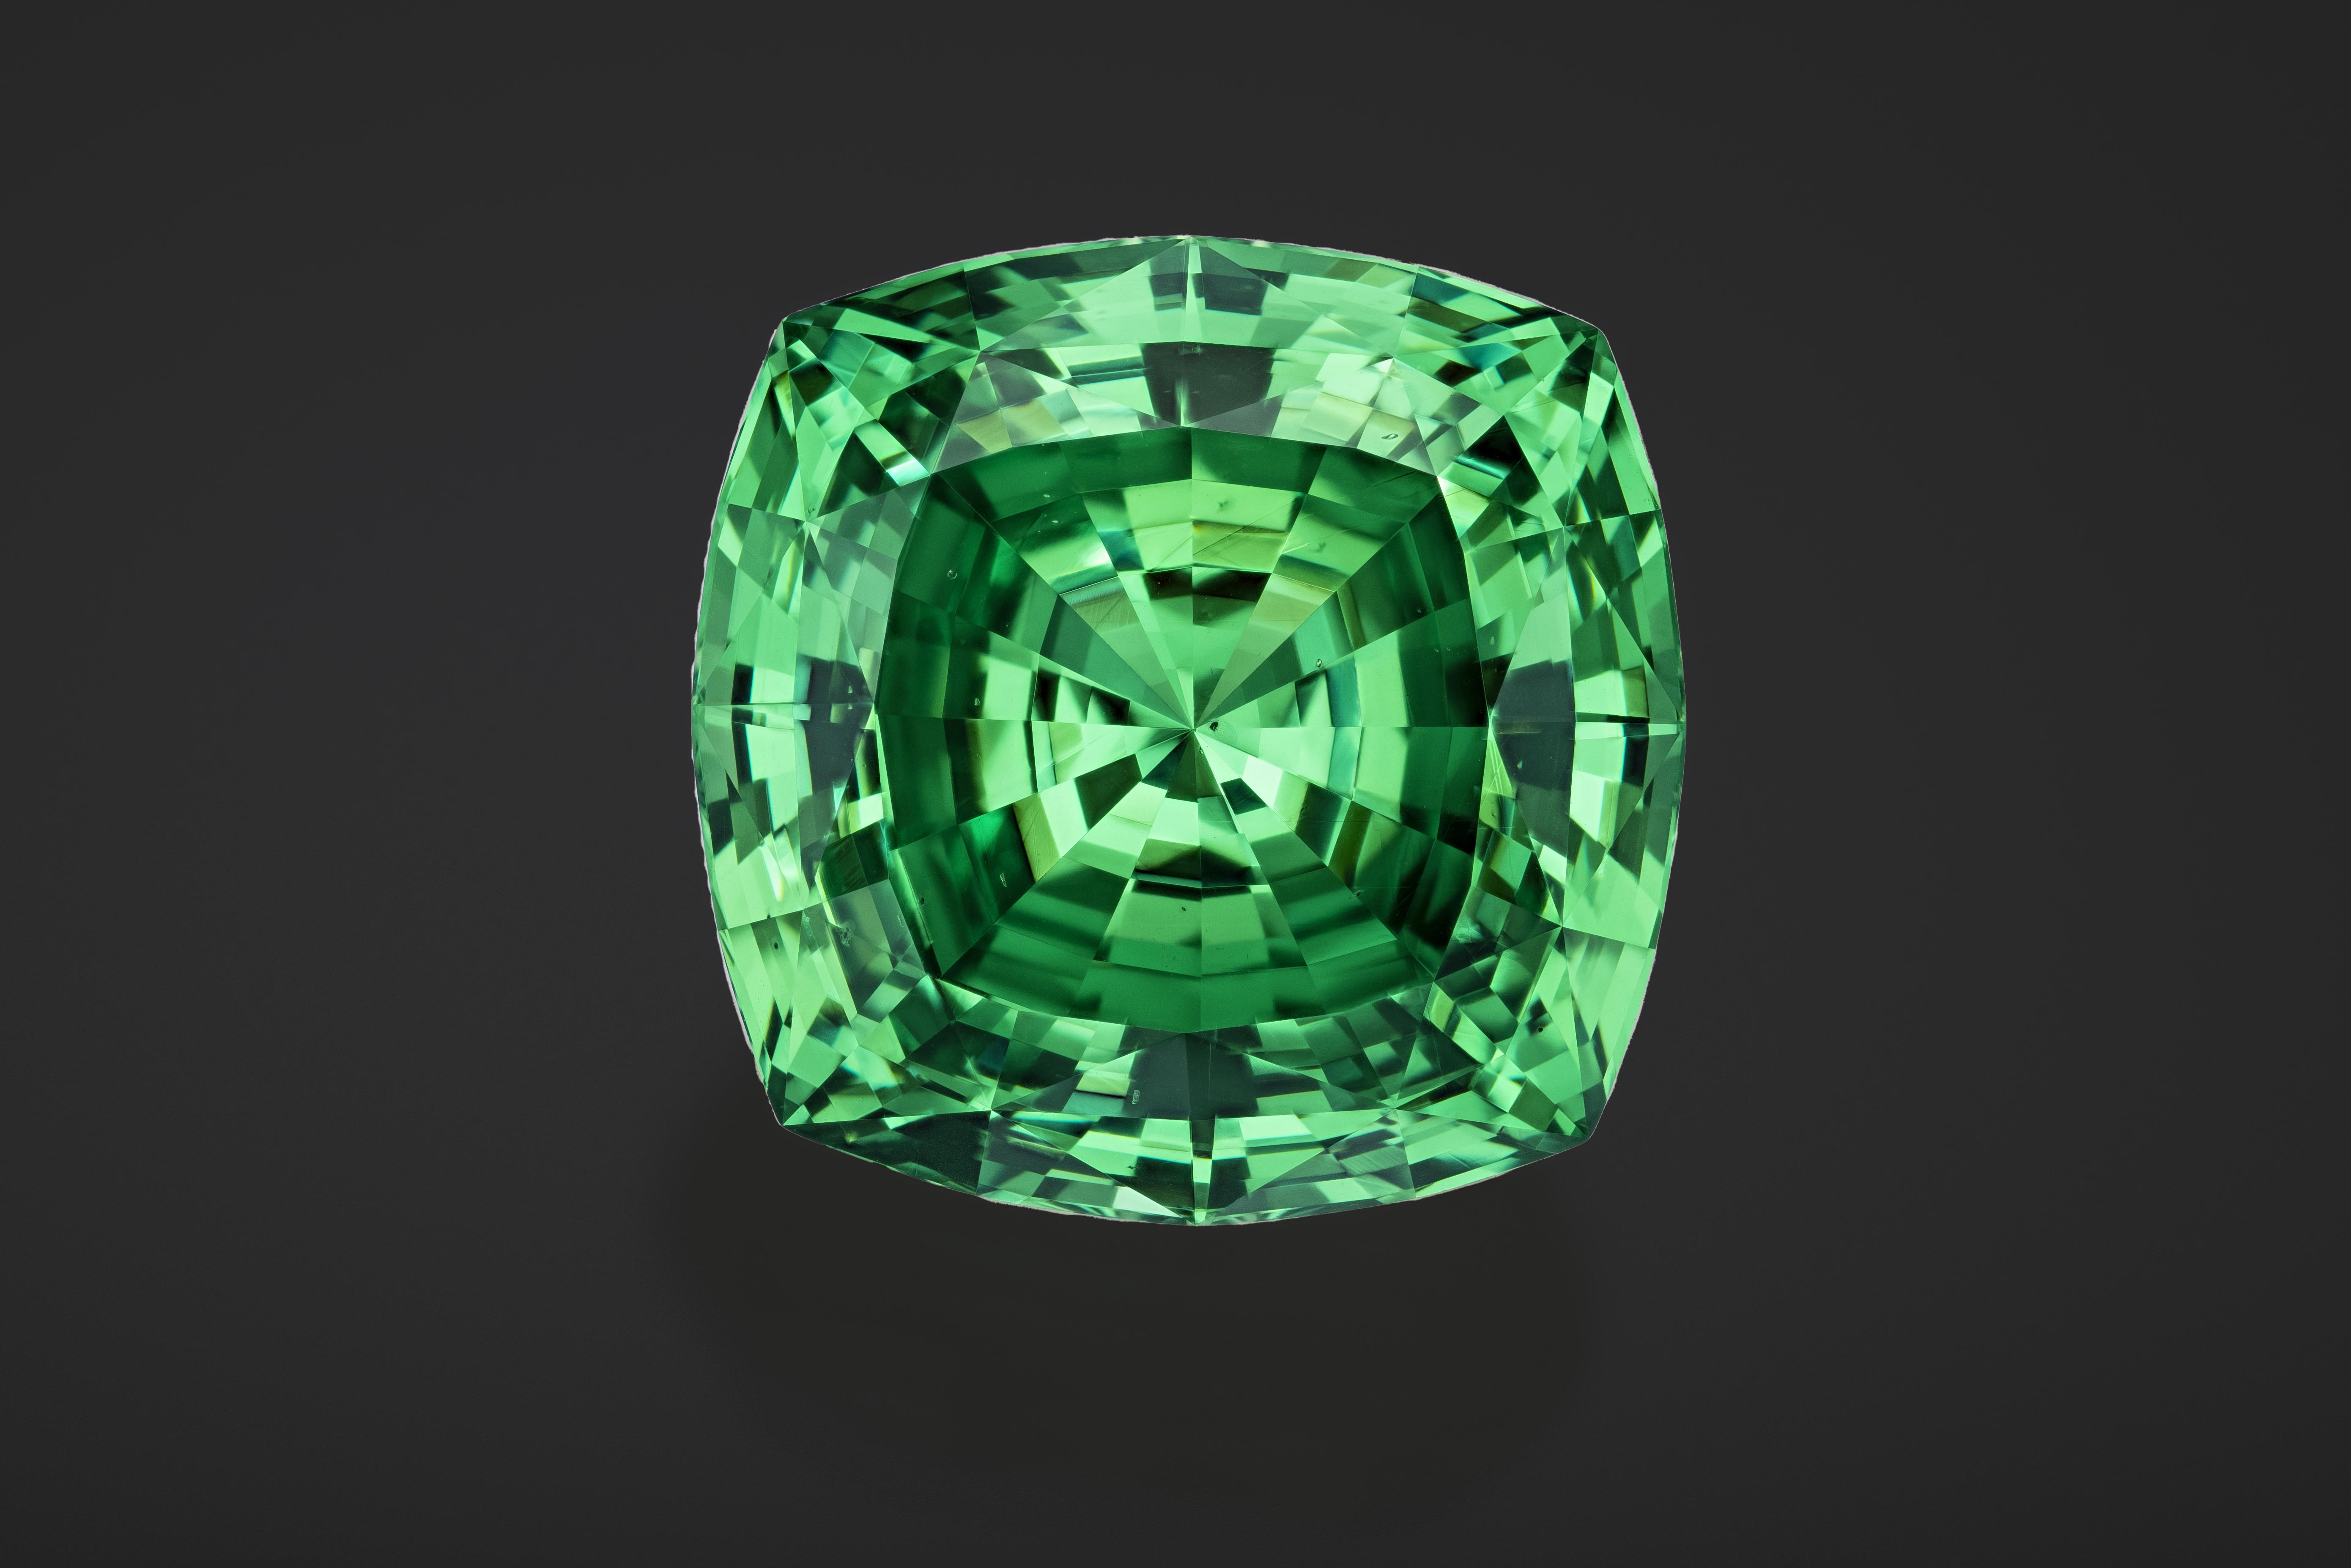 Large green gem on black background